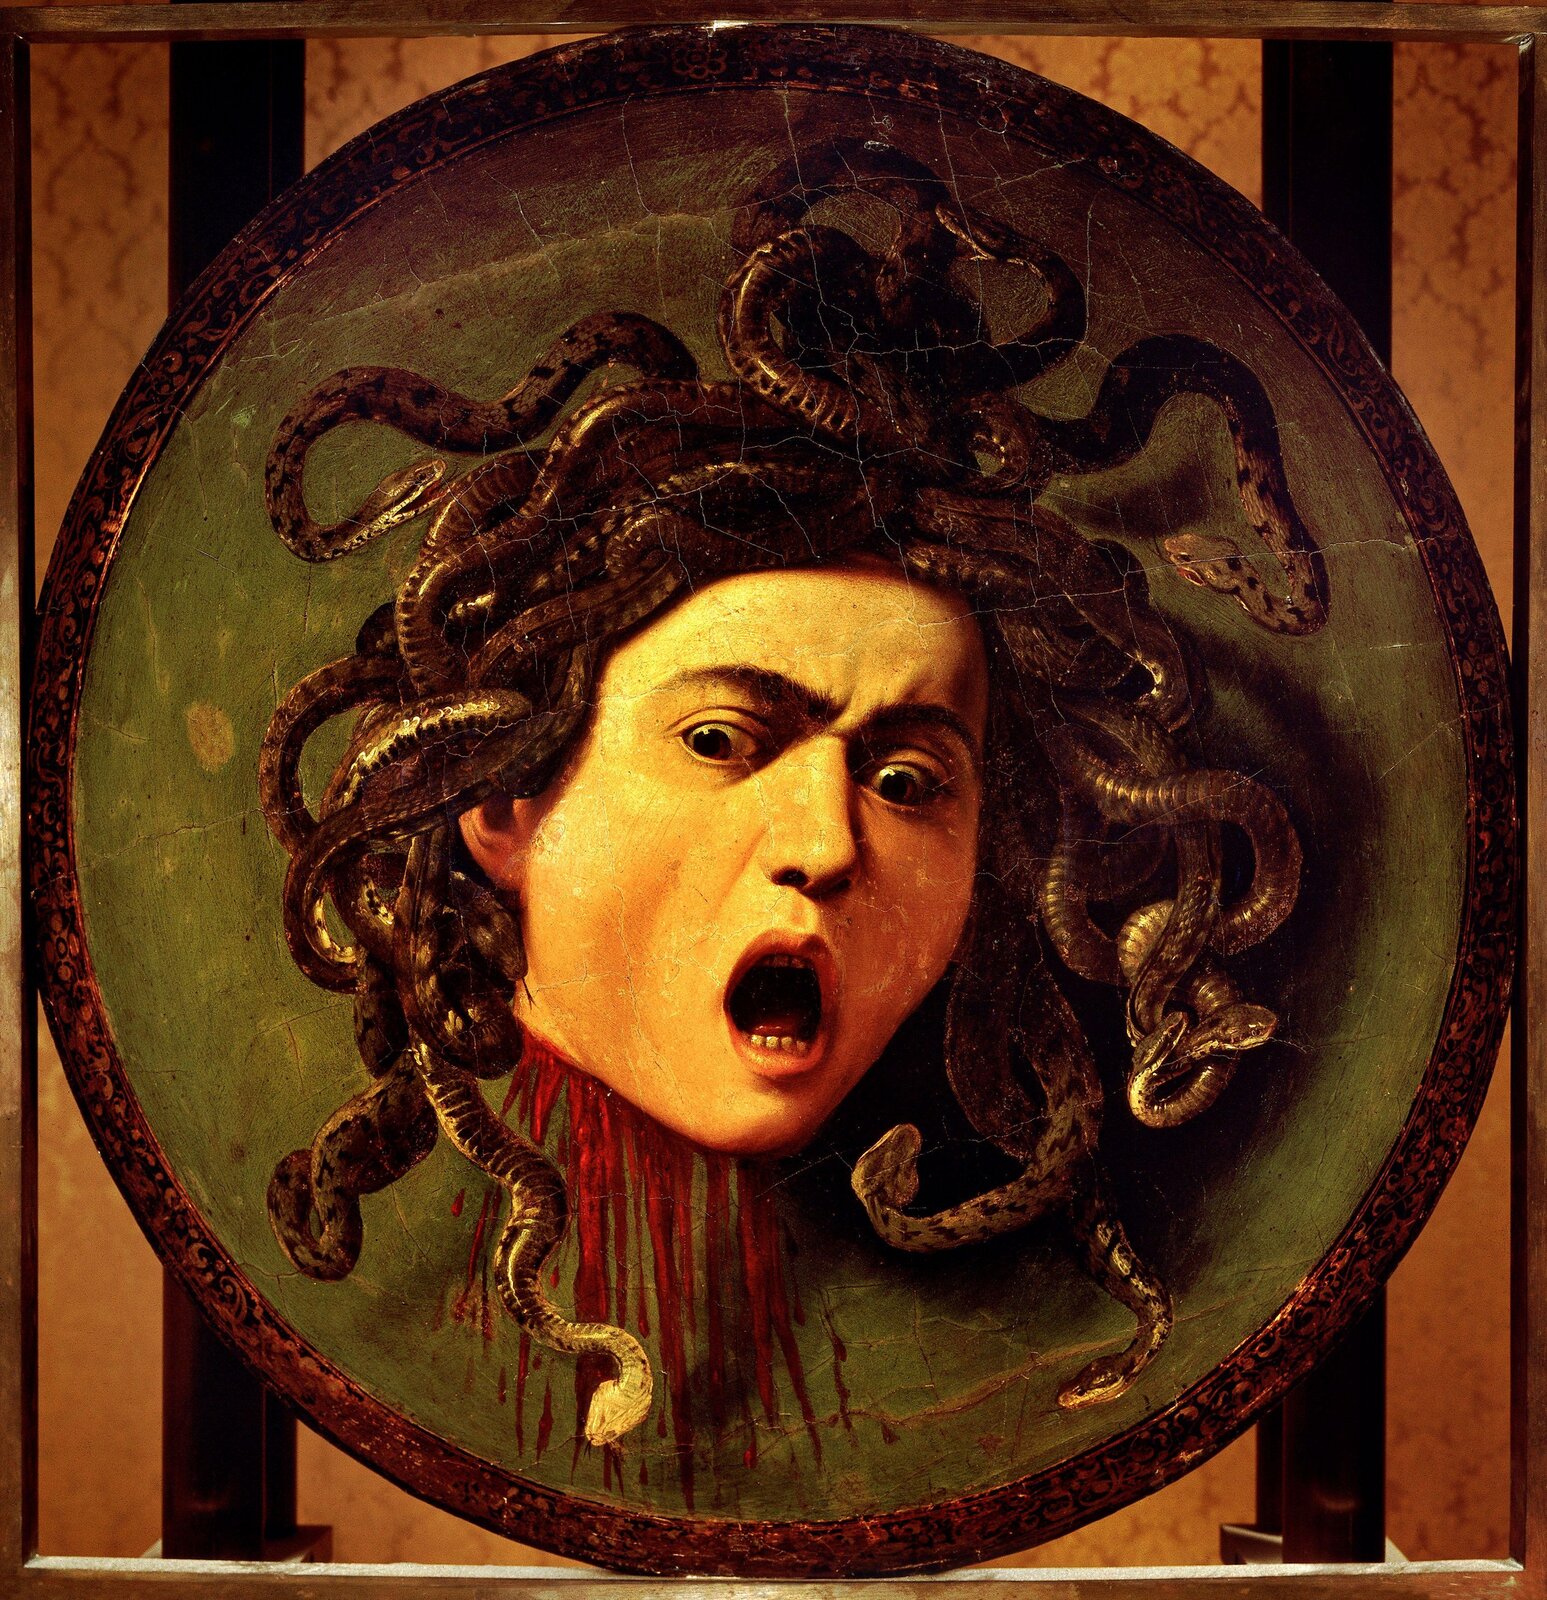 Ilustracja o kształcie kwadratu przedstawia obraz Caravaggia „Głowa Meduzy”. Ukazuje odcięta głowę, z której szyi wytryskuje krew. Na głowie zamiast włosów ma wijące się węże. Przerażenie na twarzy podkreślają szeroko otwarte oczy oraz usta. Głowa Meduzy została umieszczona na okrągłym, zielonym tle, a to z kolei na kwadratowej płaszczyźnie w ciemnym pomarańczowym z dwiema pionowymi, czarnymi pasami.